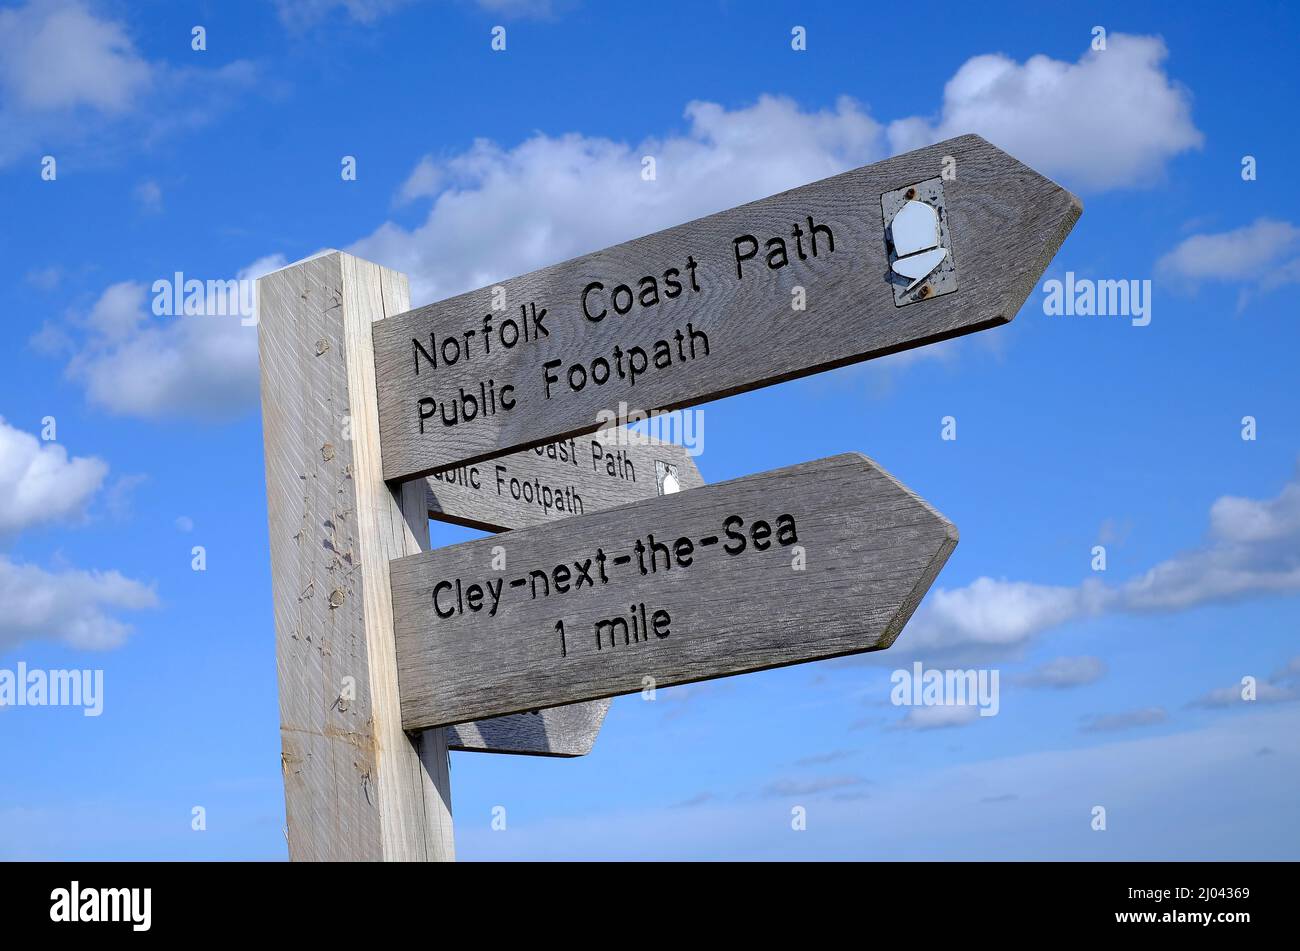 señal de ruta de la costa de norfolk, cley-next-the-sea, norte de norfolk, inglaterra Foto de stock